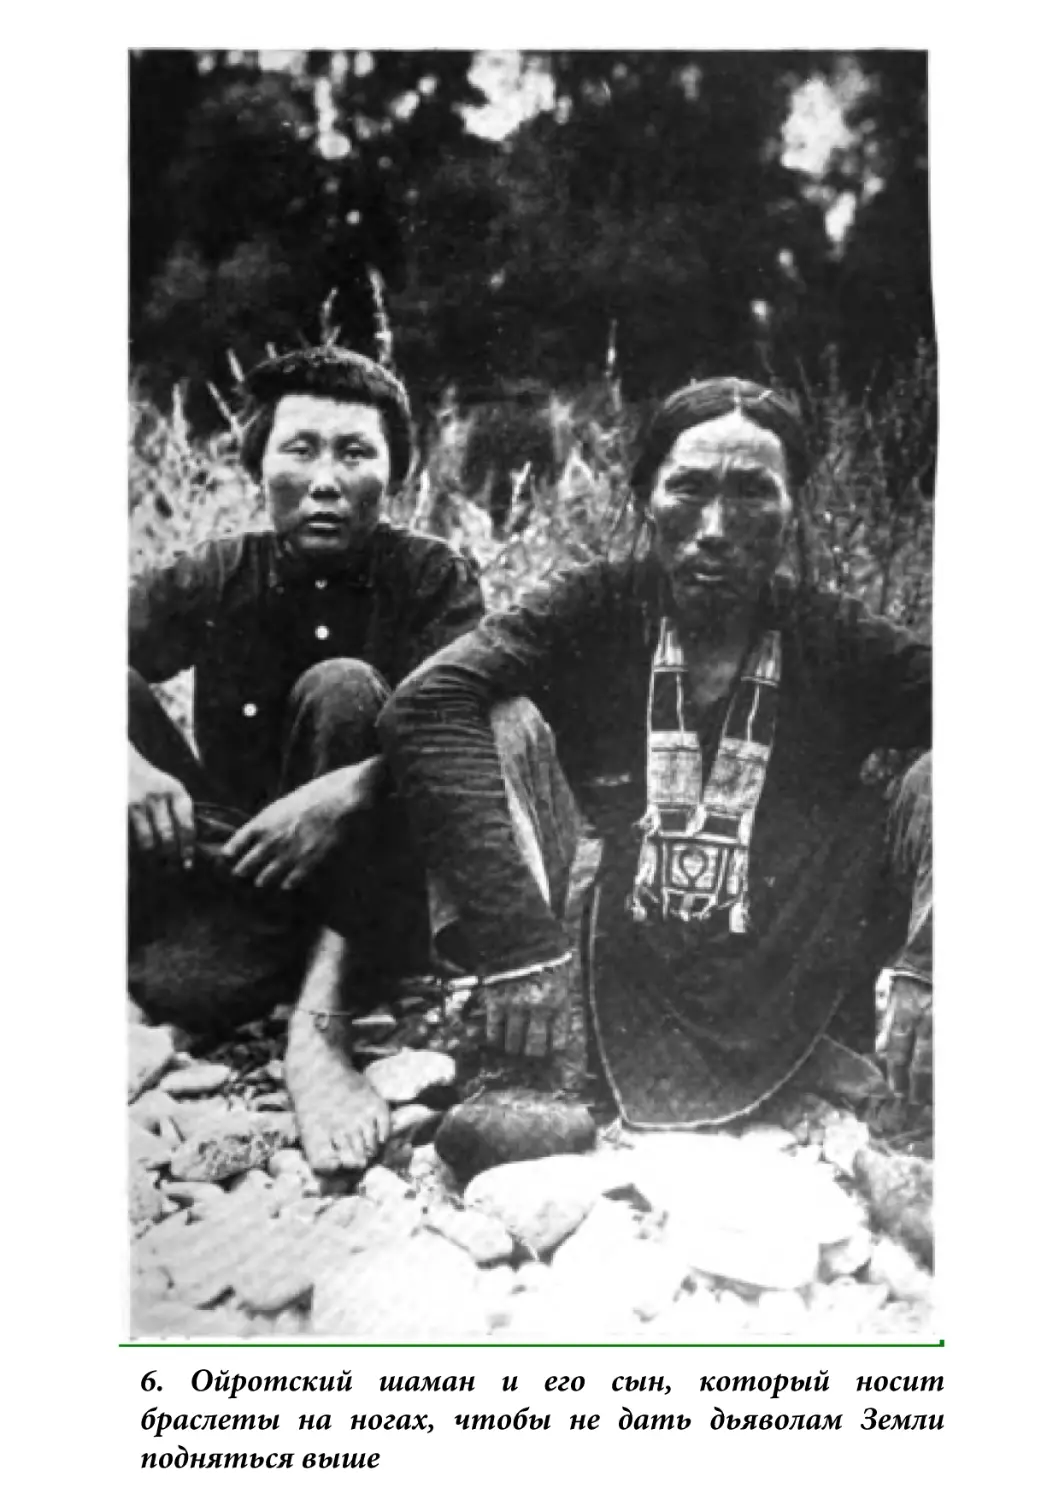 6. Ойротский шаман и его сын, который носитбраслеты на ногах, чтобы не дать дьяволам Землиподняться выше